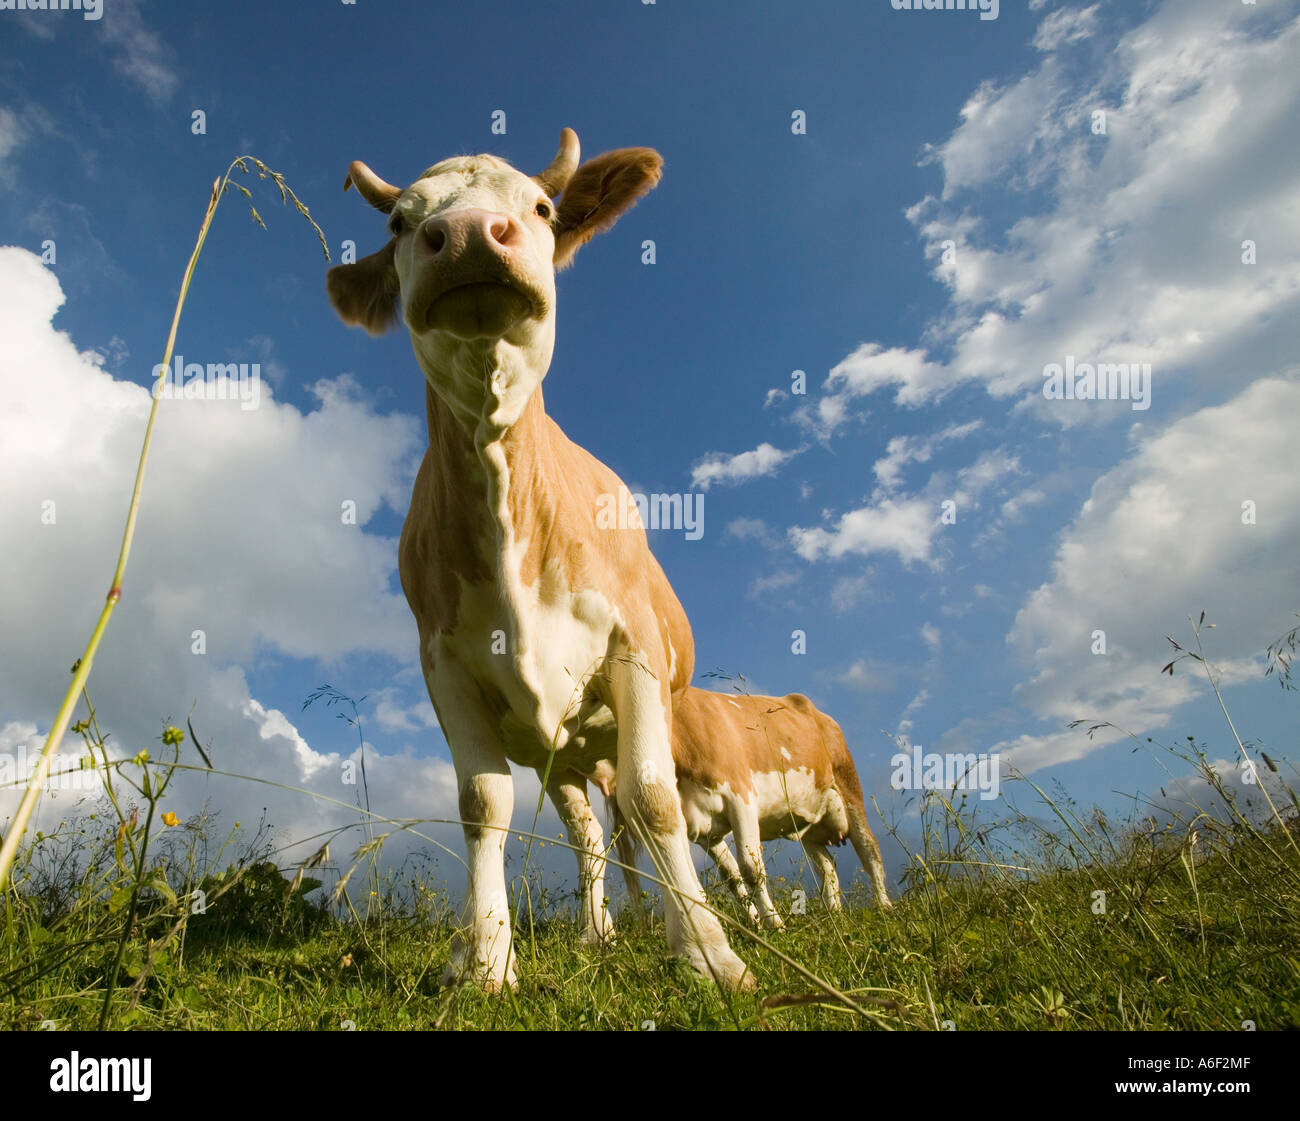 Milk cows Stock Photo